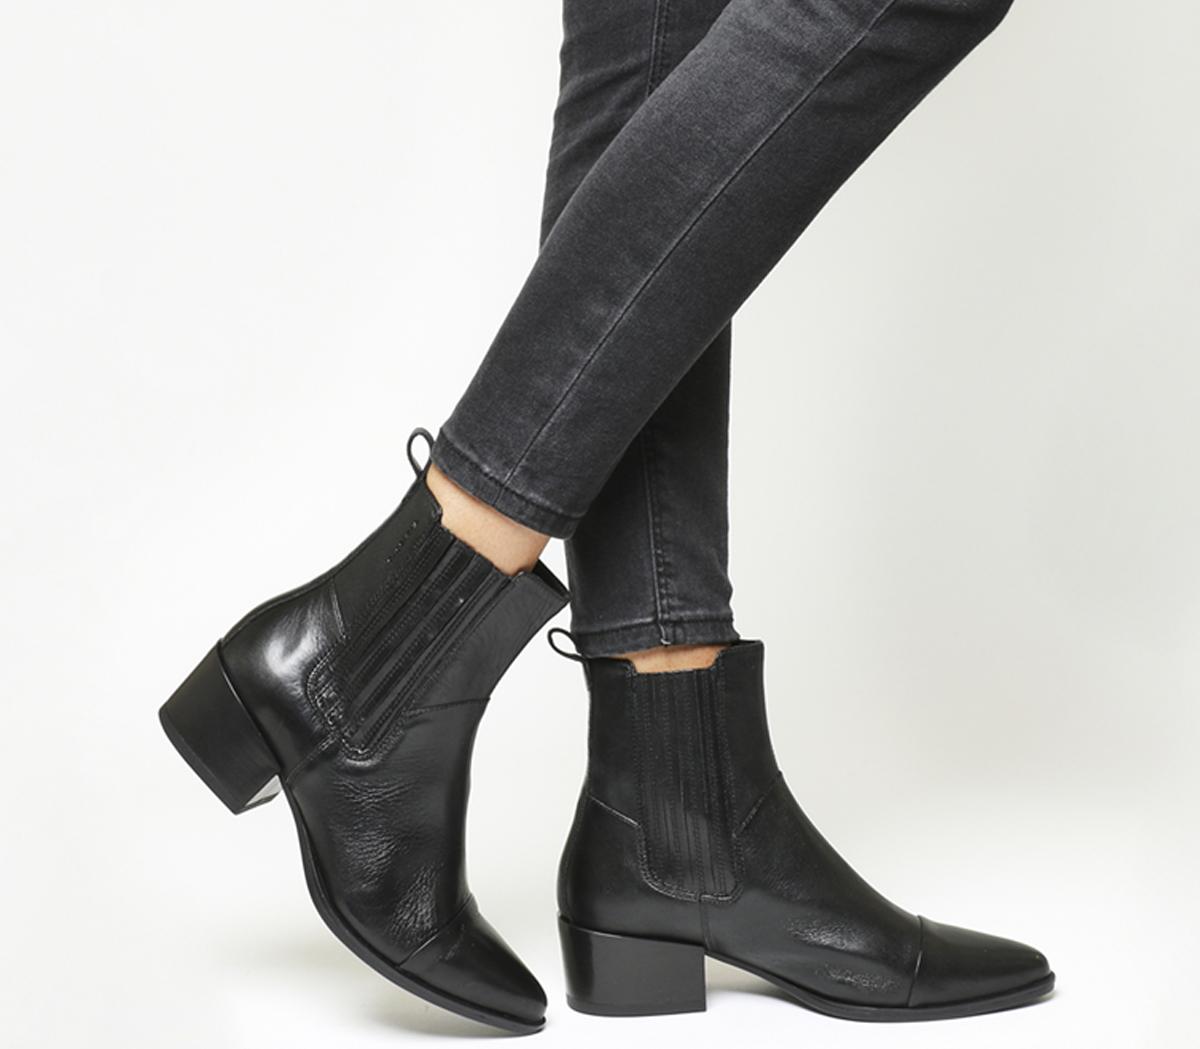 Vagabond ShoemakersMarja Chelsea BootsBlack Leather